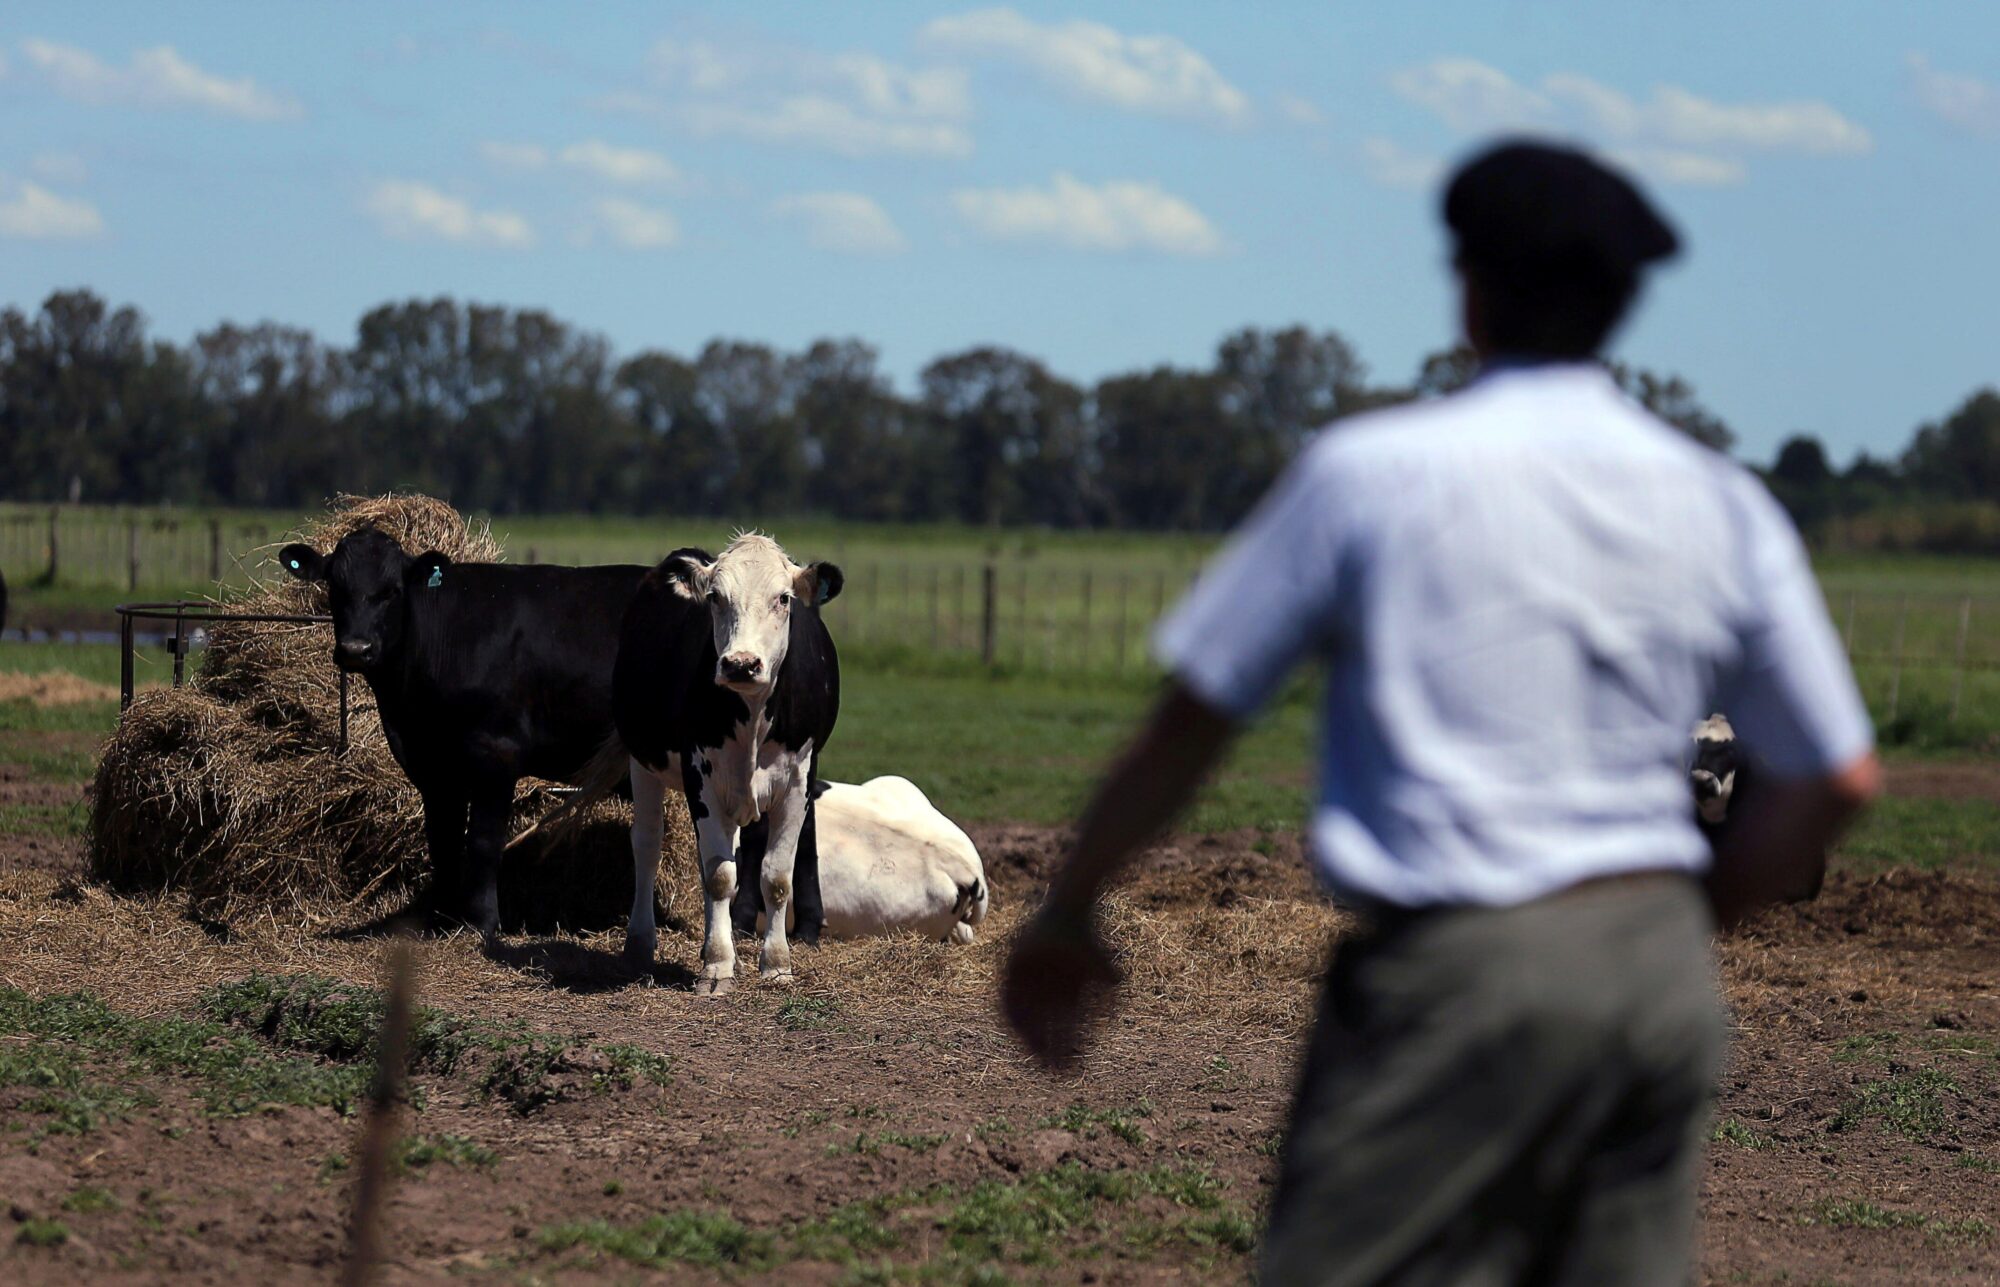 <p>Vacas pastando en una granja de Chascomús, provincia de Buenos Aires, en Argentina. La ganadería representa una parte importante de las emisiones de metano en Argentina y sus vecinos Brasil y Uruguay (Imagen: Marcos Brindicci)</p>